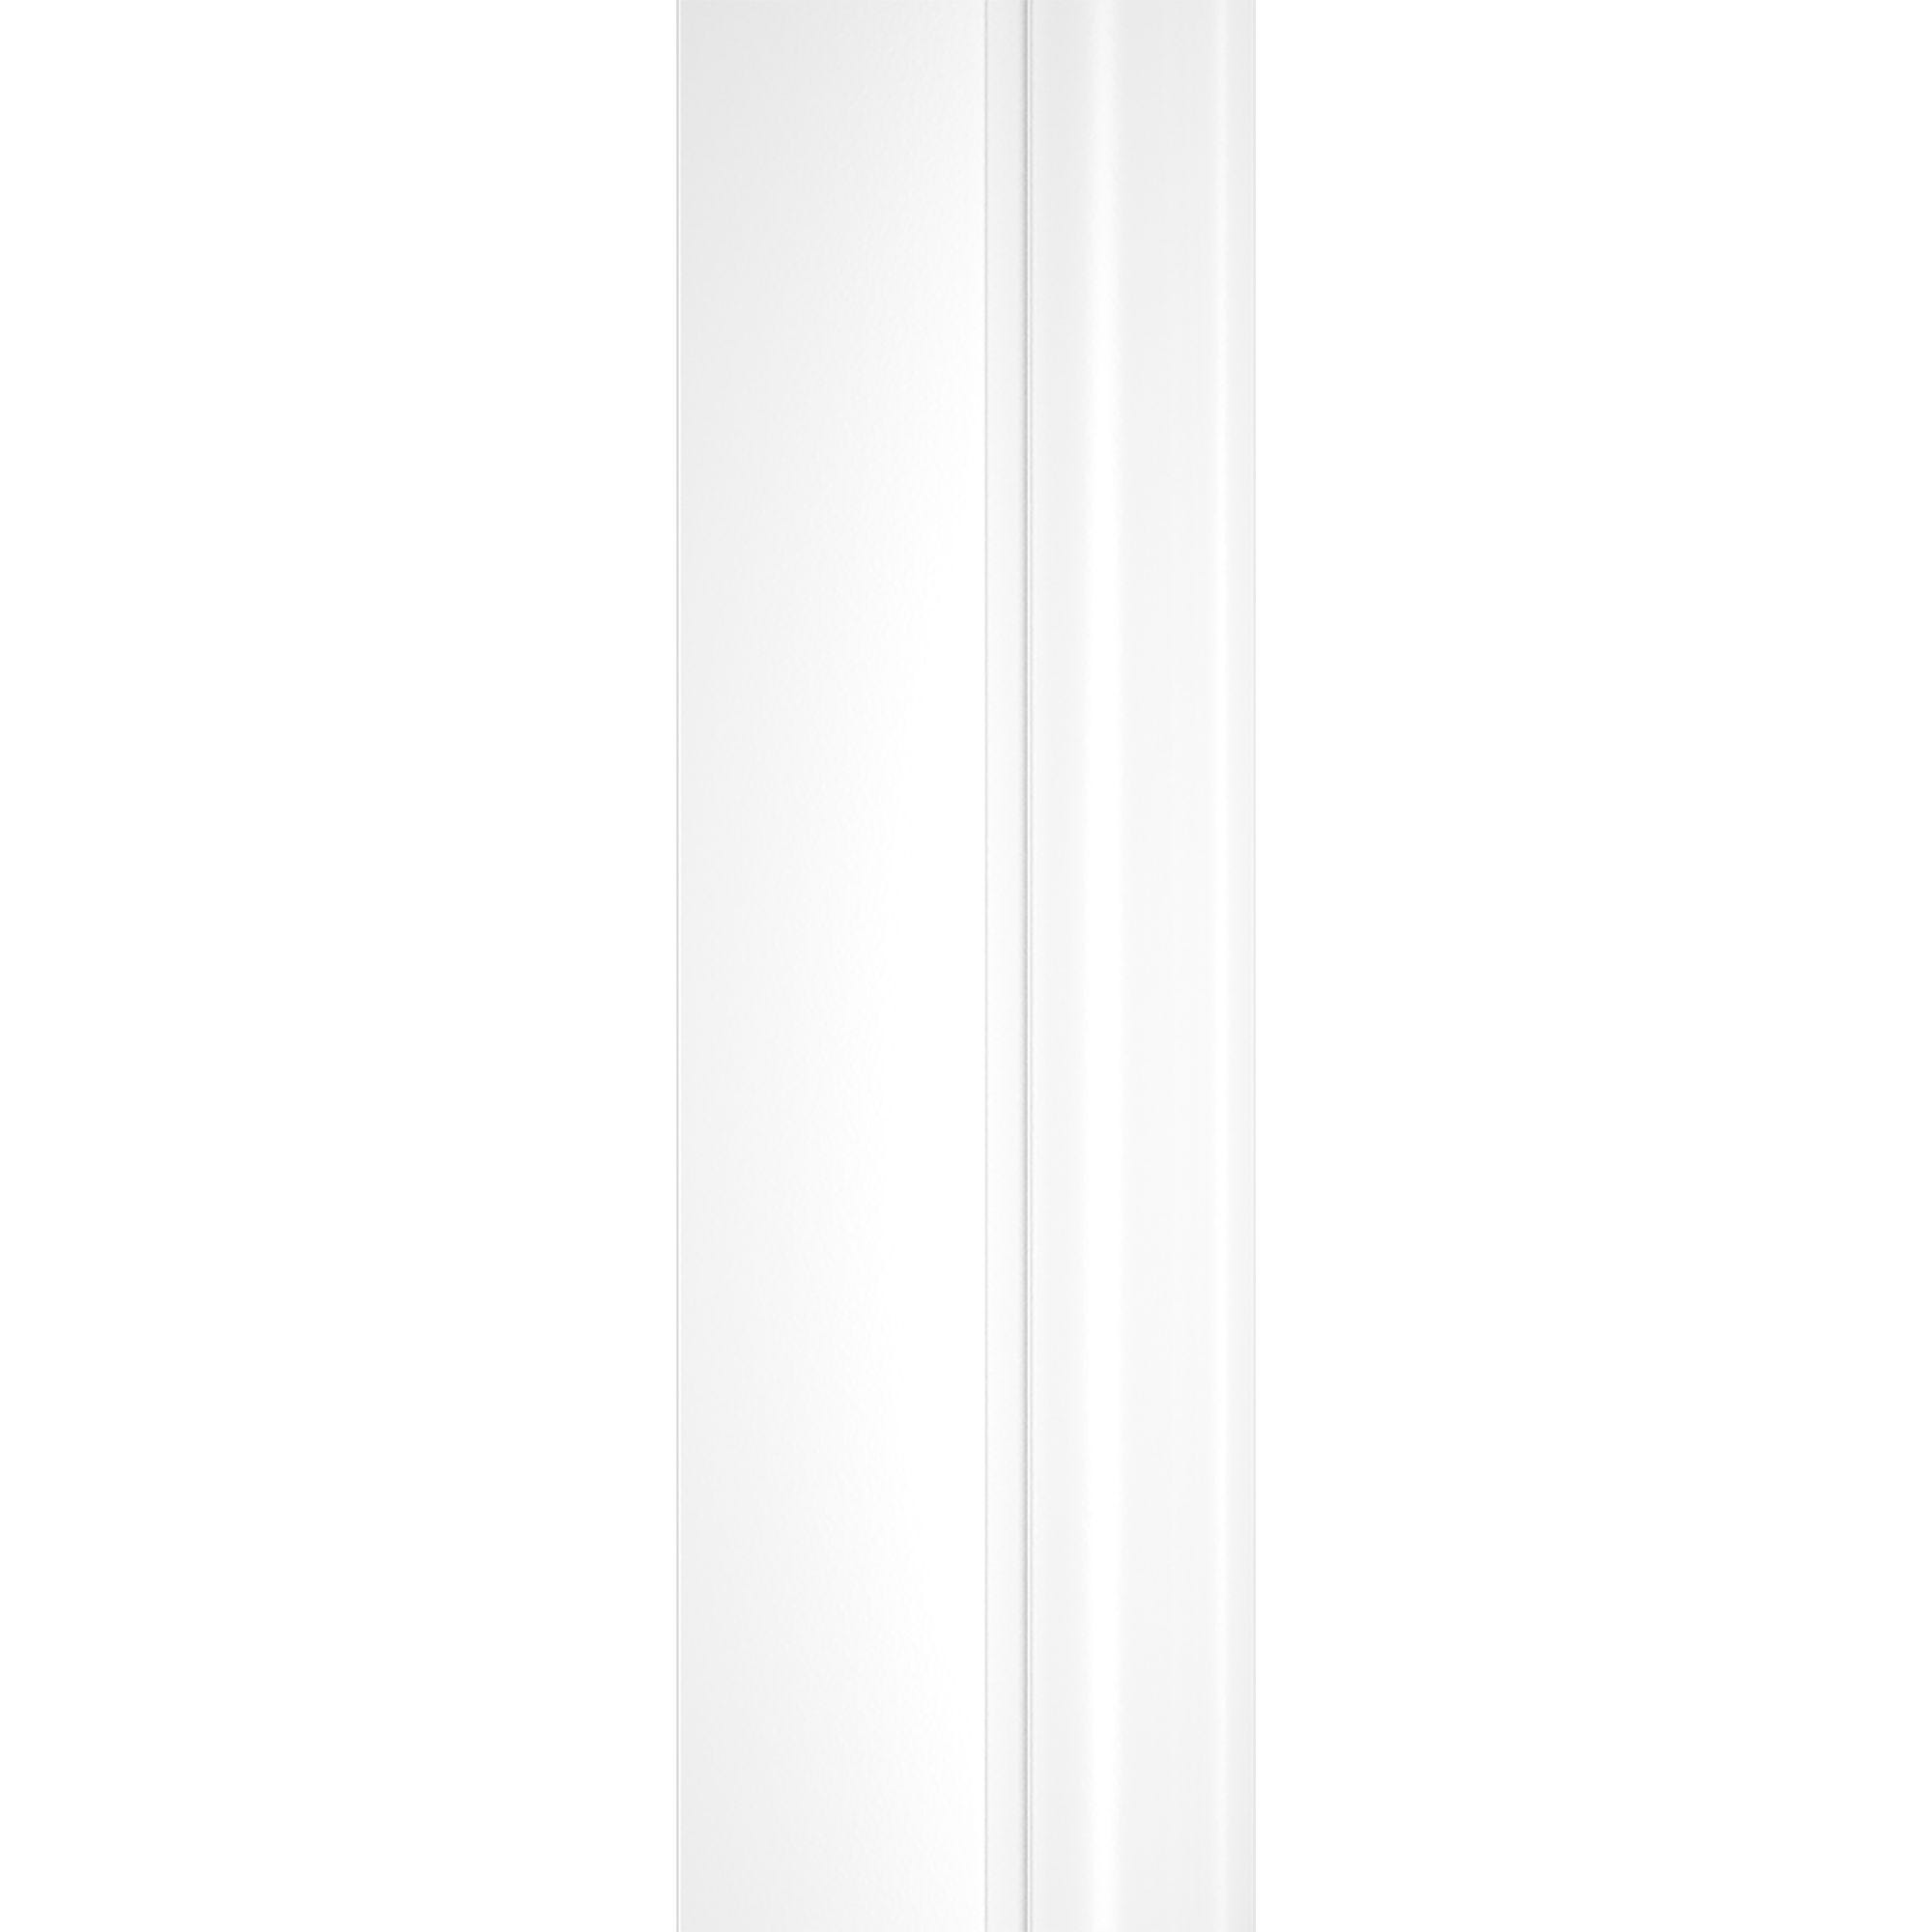 Schulte pare-baignoire rabattable, 80 x 140 cm, verre 5mm, écran paroi de baignoire 1 volet pivotant, sérigraphie bandes transversales, profilé blanc 3